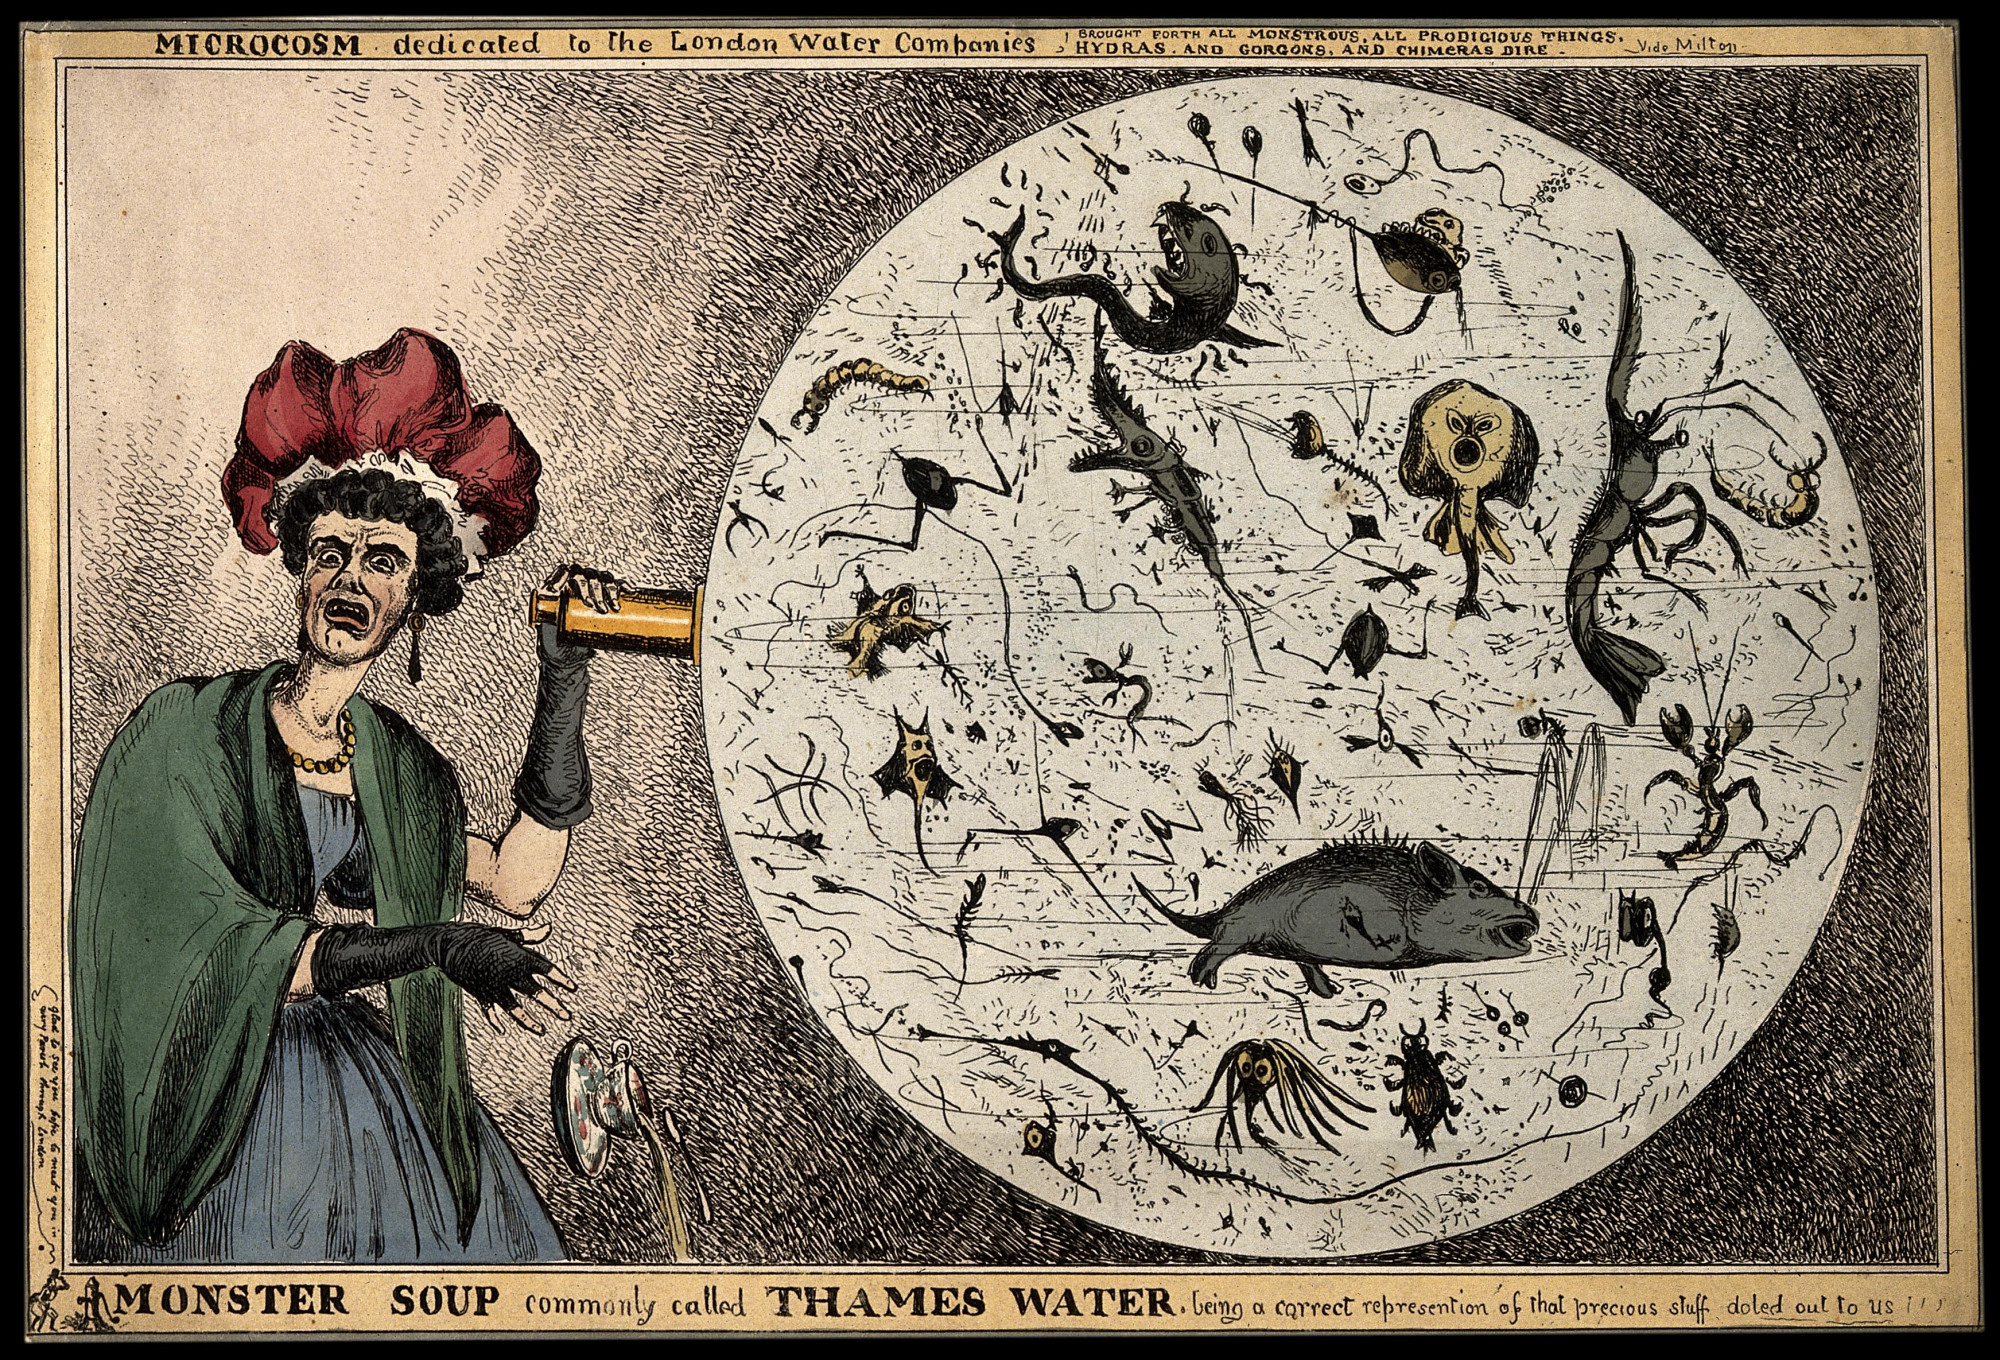 Farbige Illustration: Eine Frau lässt entsetzt ihre Teetasse fallen, als sie den vermeintlich monströsen Inhalt eines vergrößerten Wassertropfens aus der Themse erblickt.